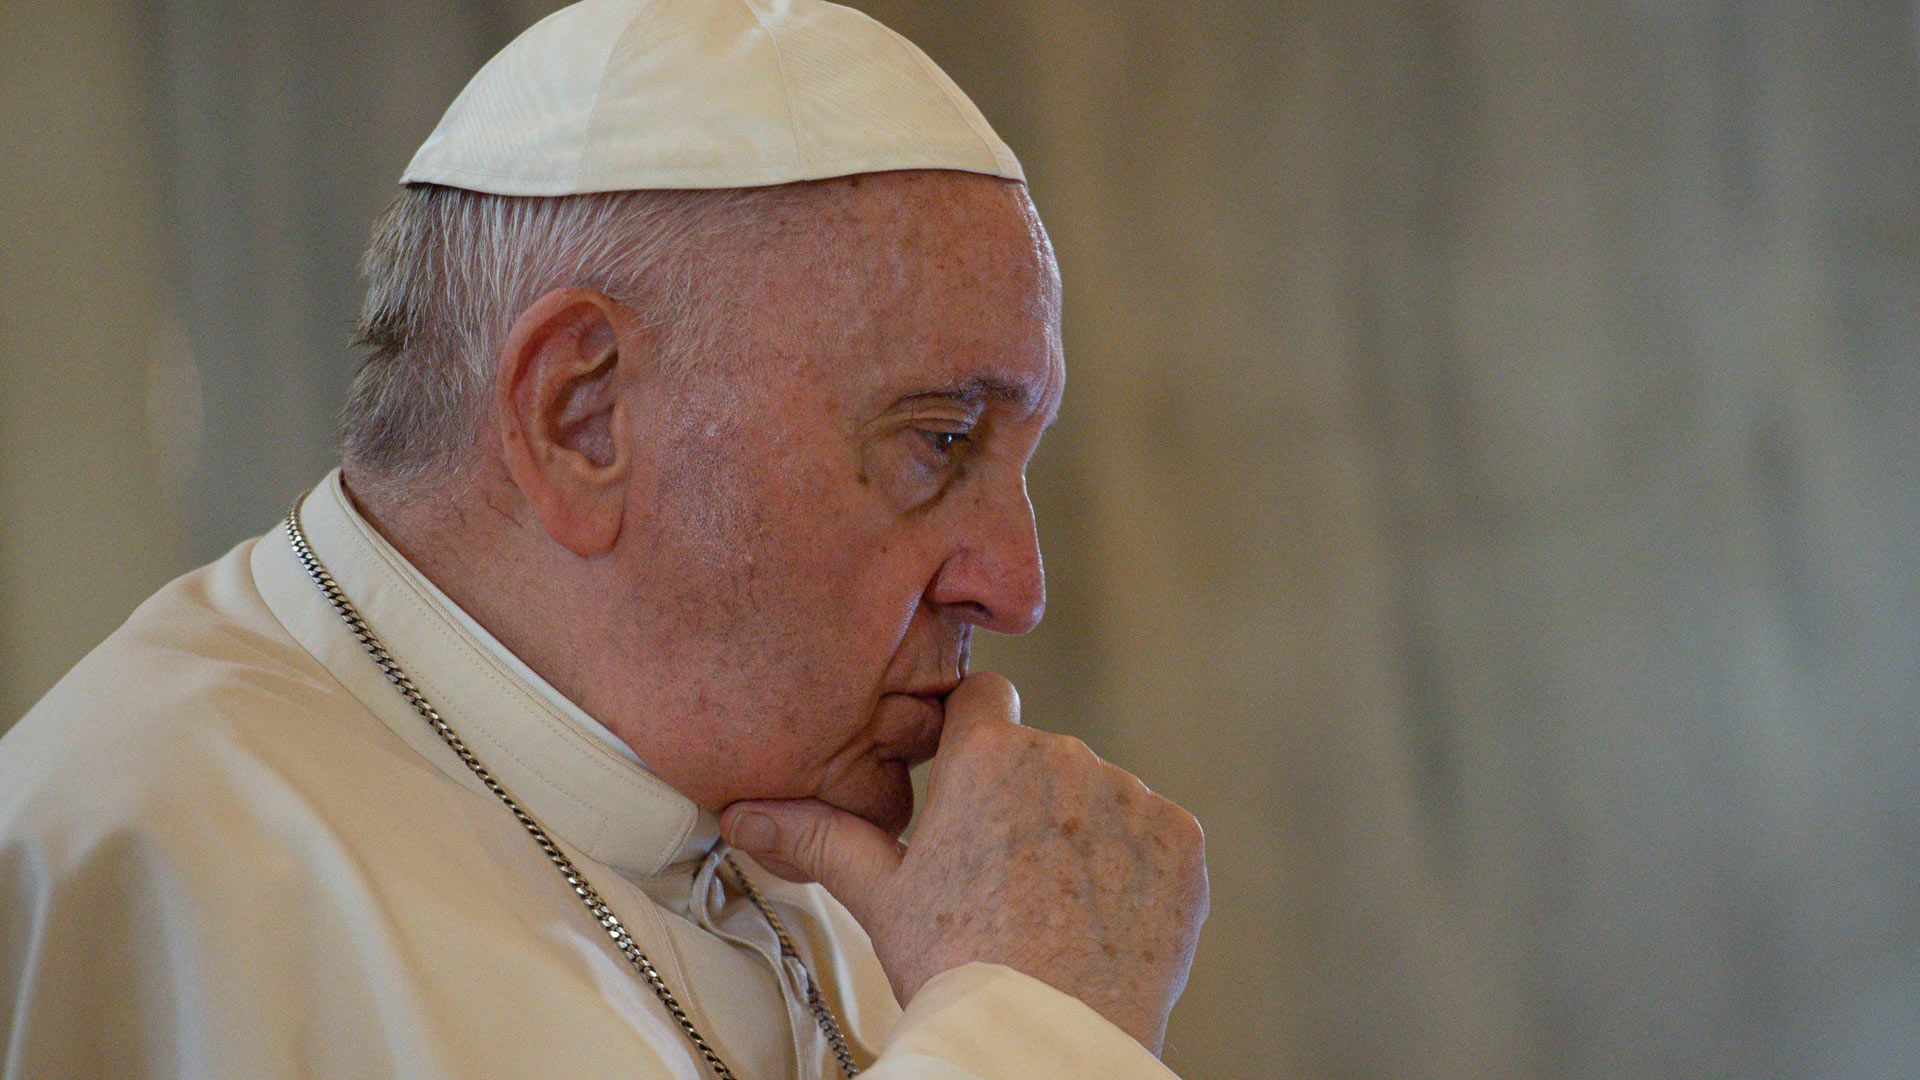 Noticias | La mirada del Papa Francisco puesta sobre los humildes